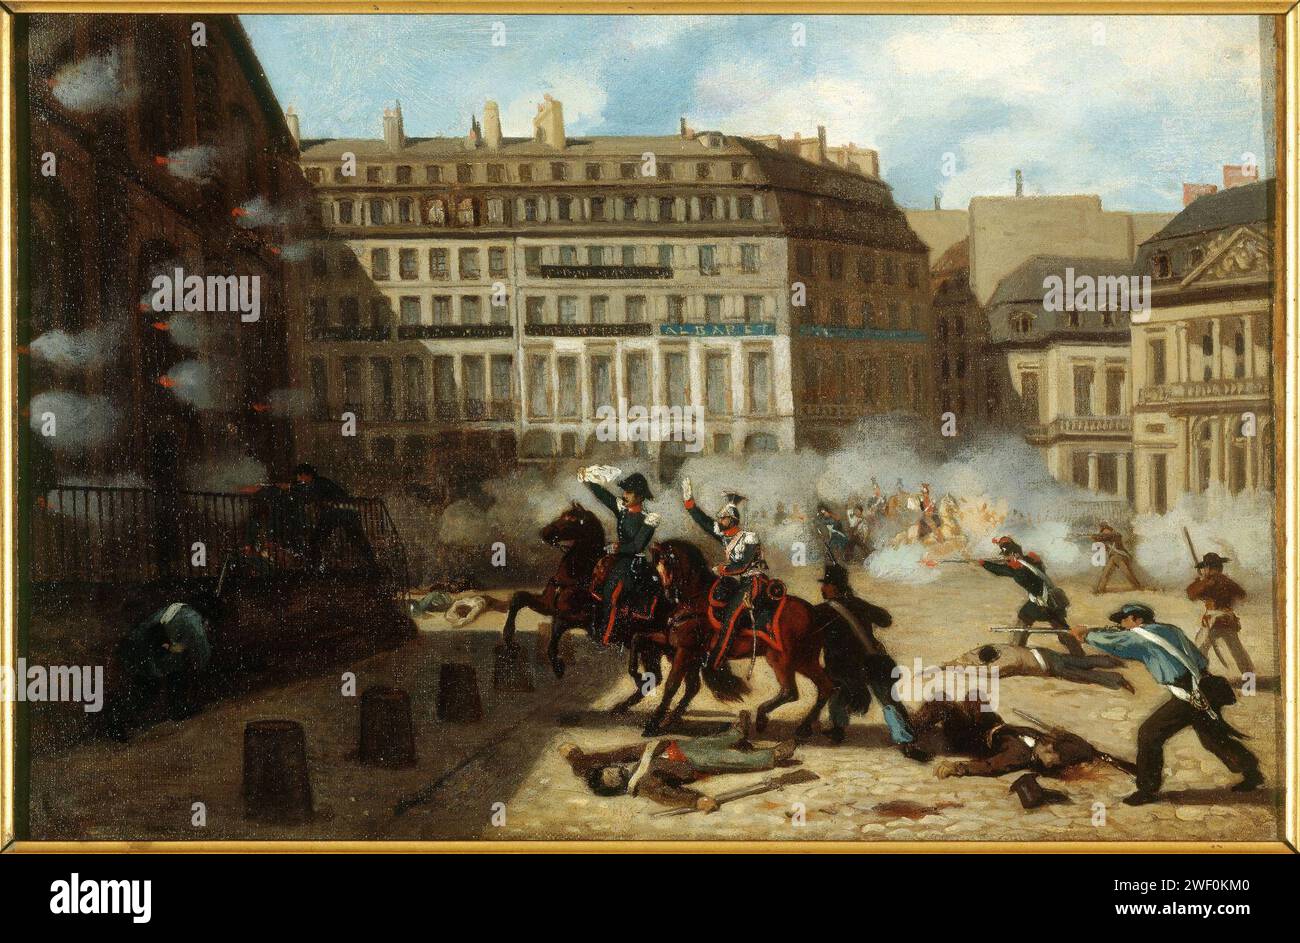 Anonymous - Prise du château d'eau, place du Palais-Royal, le 24 février 1848. Stock Photo